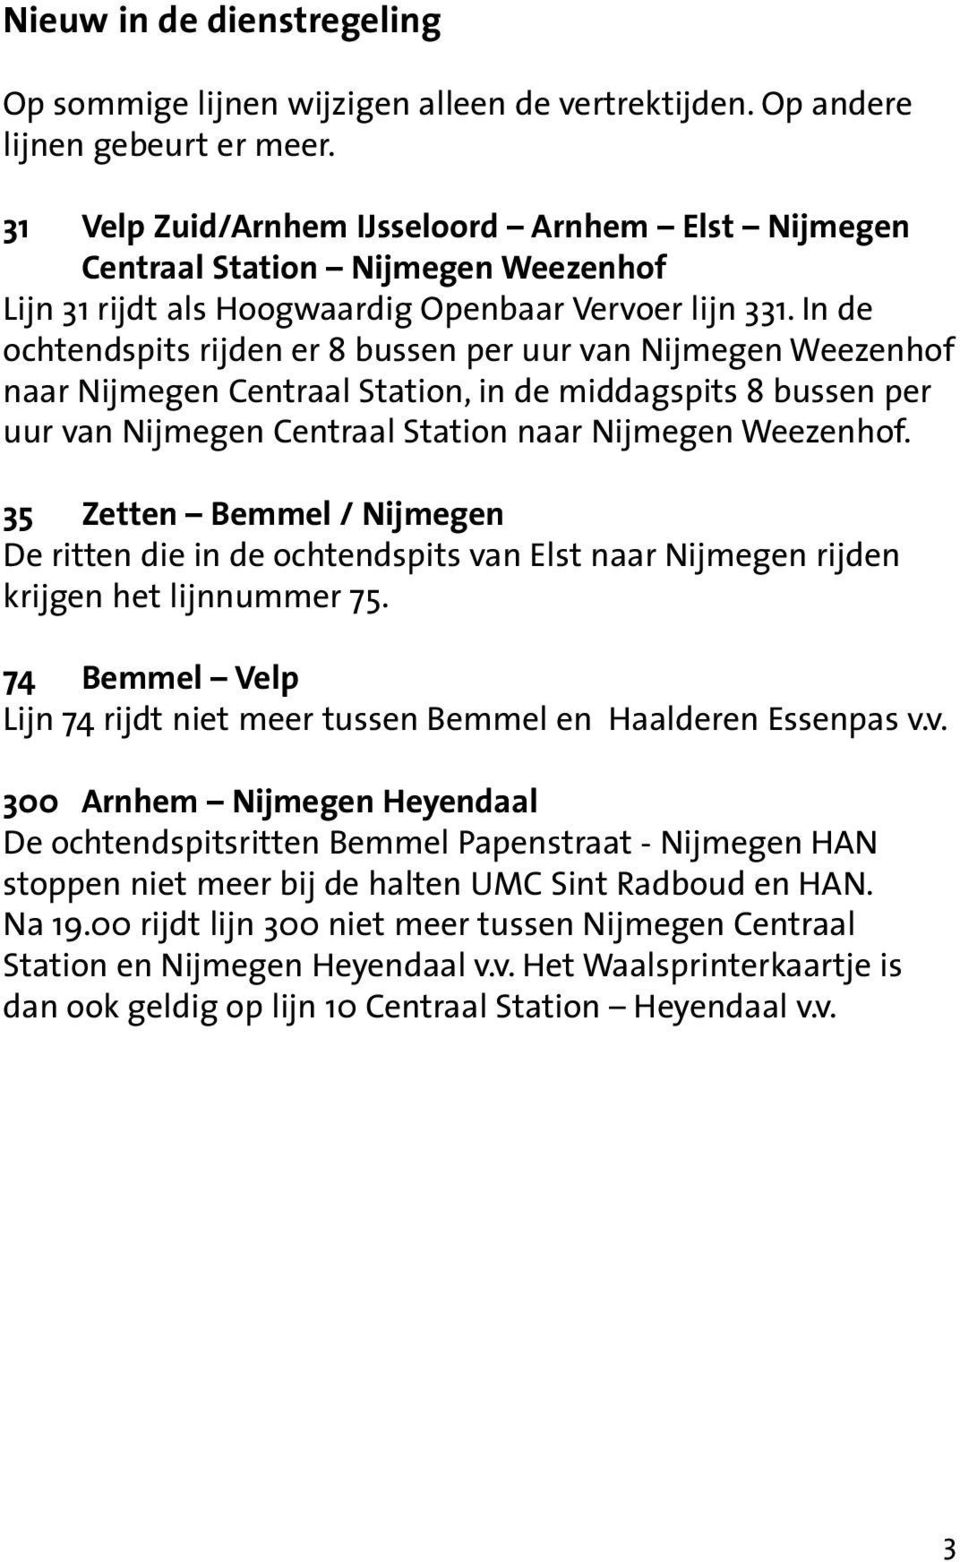 In de ochtendspits rijden er 8 bussen per uur van Nijmegen Weezenhof naar Nijmegen Centraal Station, in de middagspits 8 bussen per uur van Nijmegen Centraal Station naar Nijmegen Weezenhof.